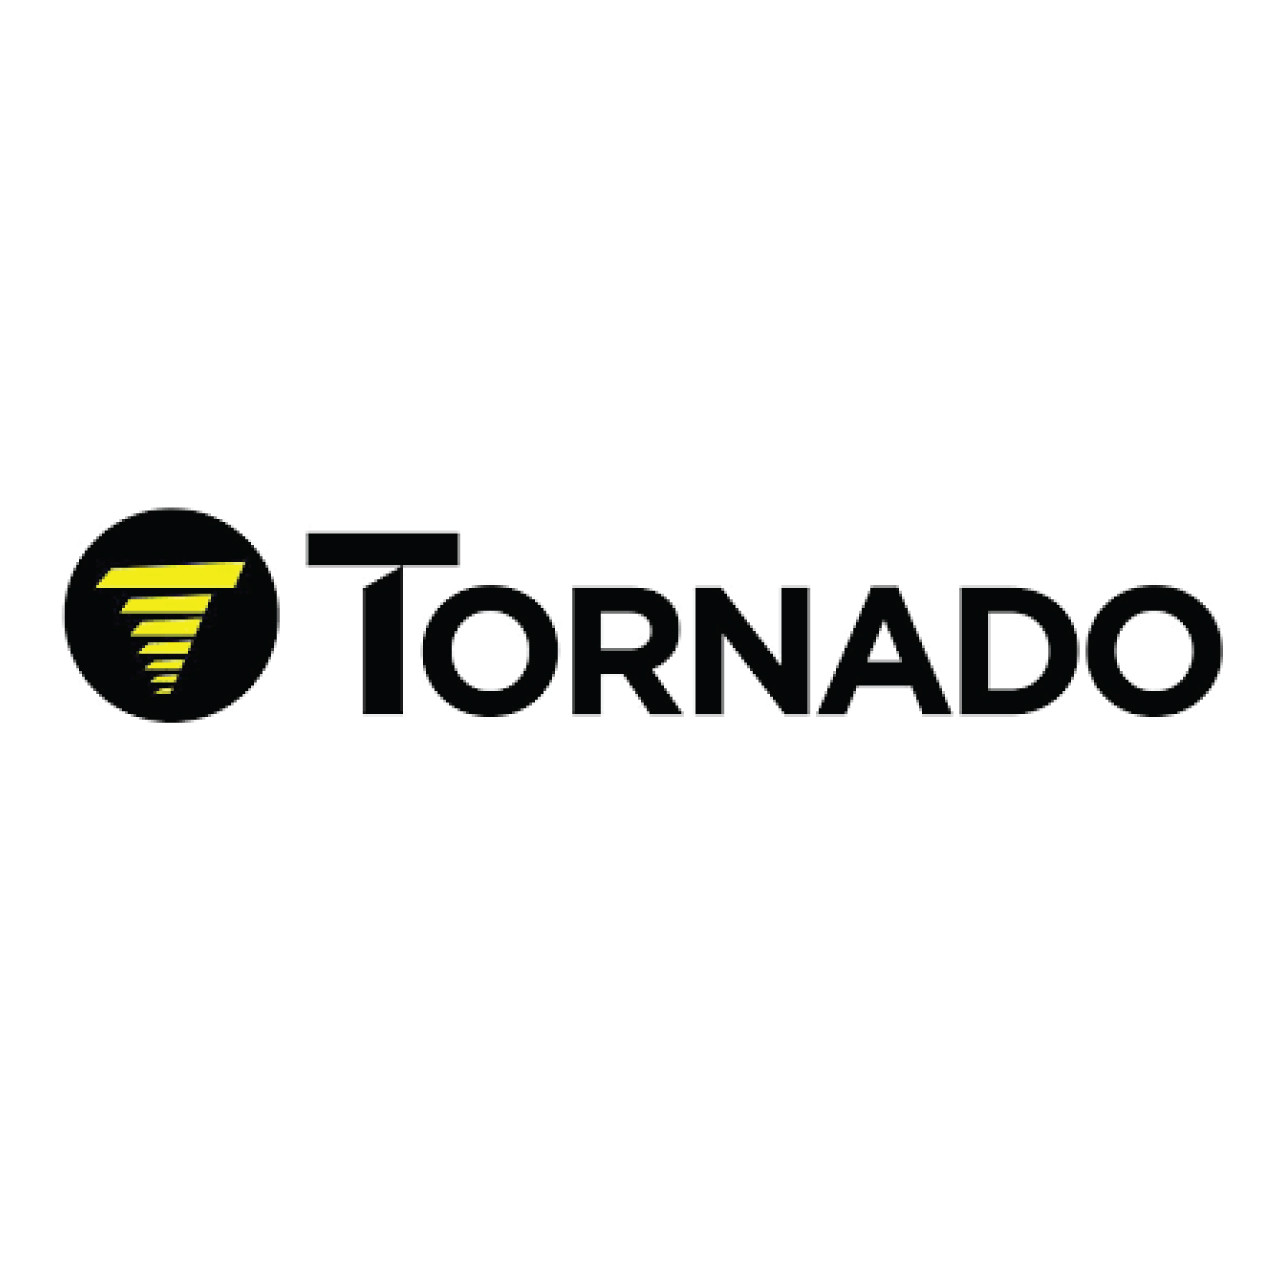 03-6041-0000, Tornado 03-6041-0000, Tornado 13'' x 1/4'' FEED TO PUMP HOSE 98103, Tornado parts